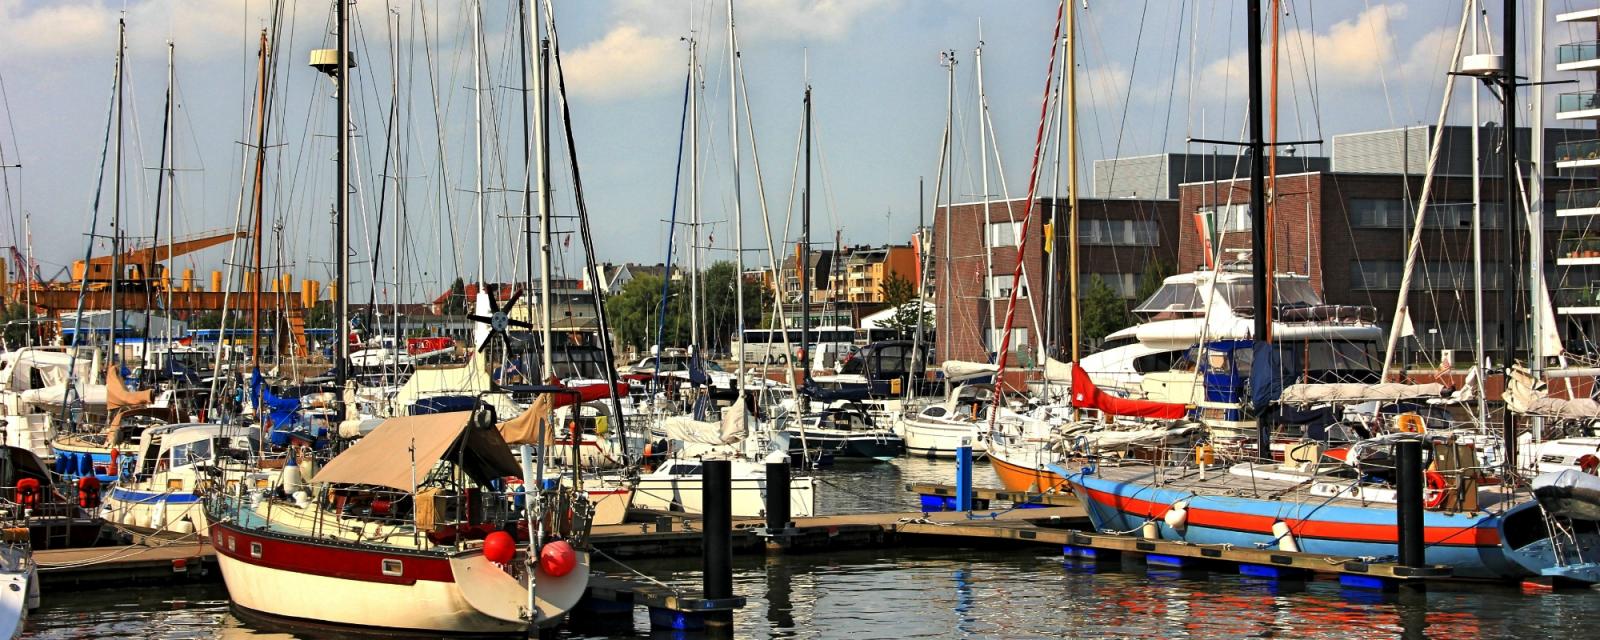 Drie redenen om Bremerhaven te bezoeken 